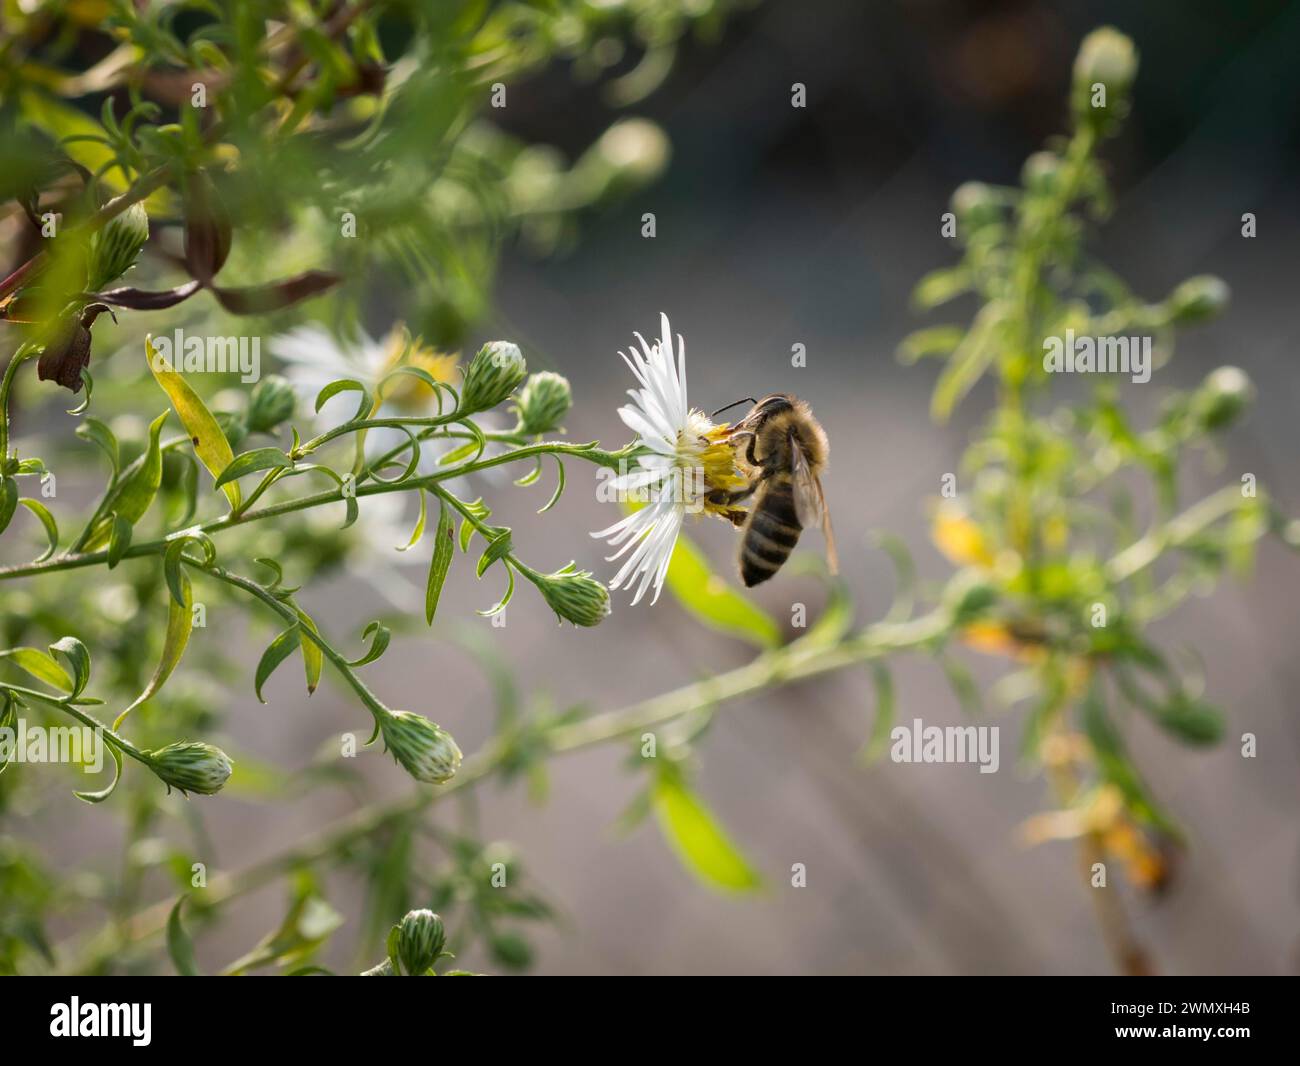 Biene, Strahlenaster (Callistephus chinensis), weiss, Spaetsommer, Garten, Lueneburg, Niedersachsen, Deutschland Stock Photo